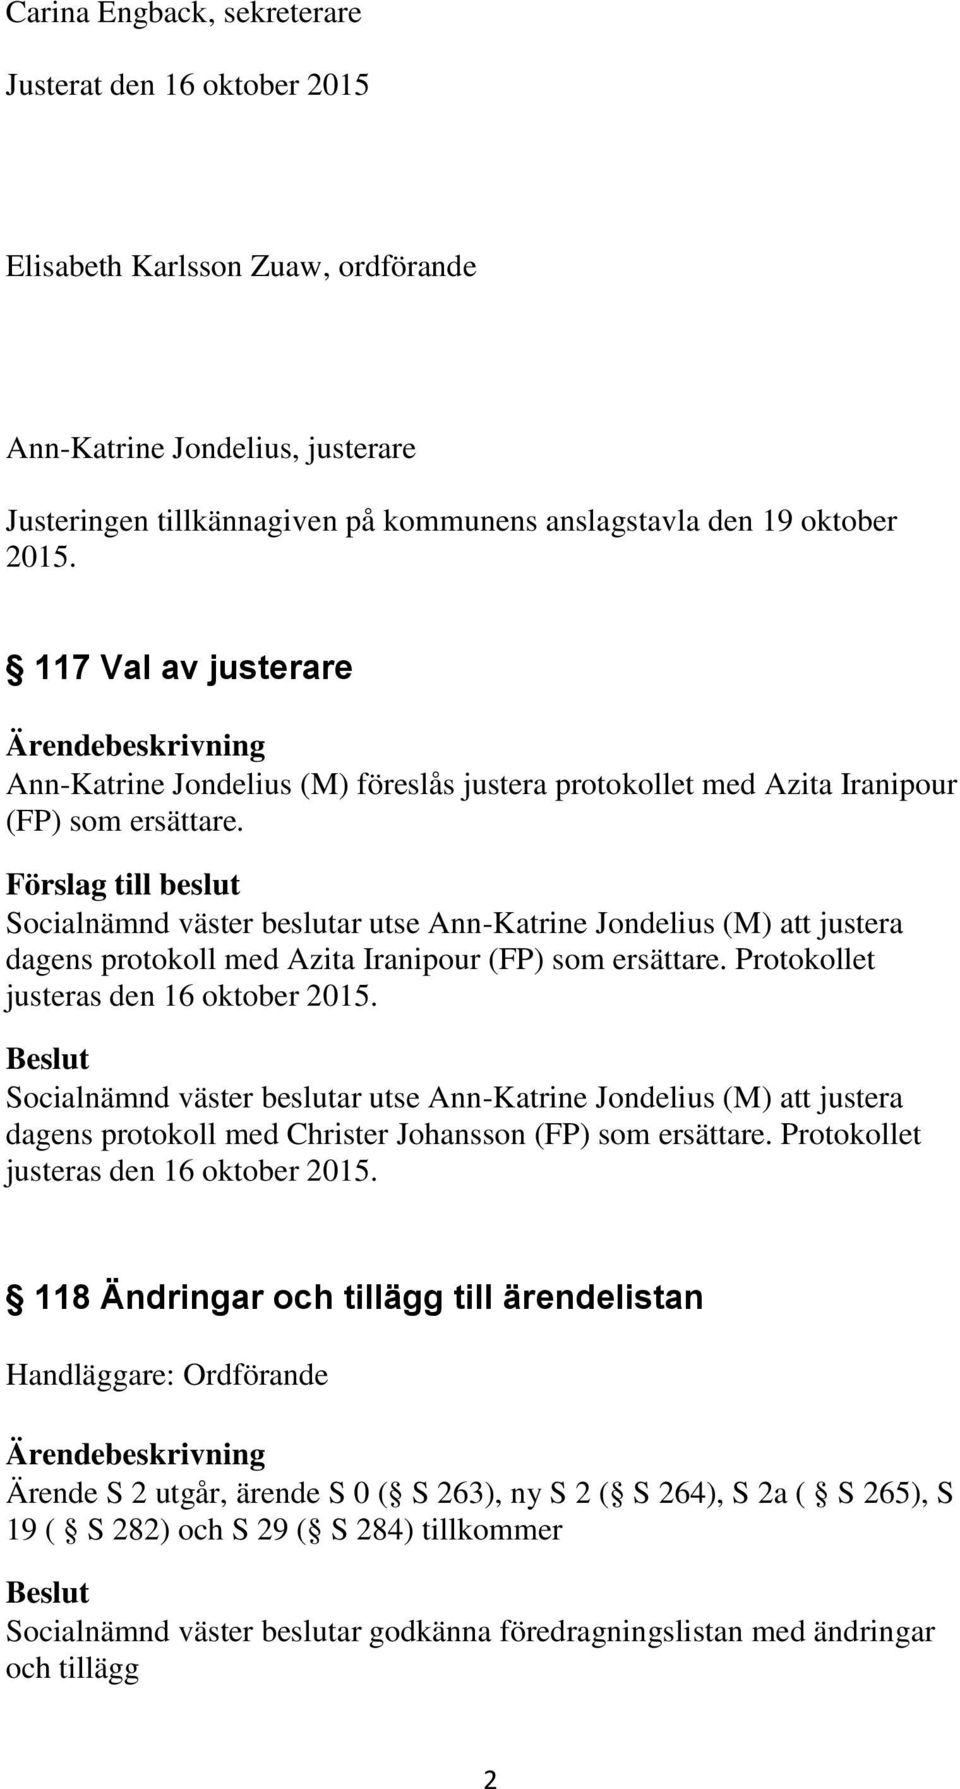 Förslag till beslut Socialnämnd väster beslutar utse Ann-Katrine Jondelius (M) att justera dagens protokoll med Azita Iranipour (FP) som ersättare. Protokollet justeras den 16 oktober 2015.